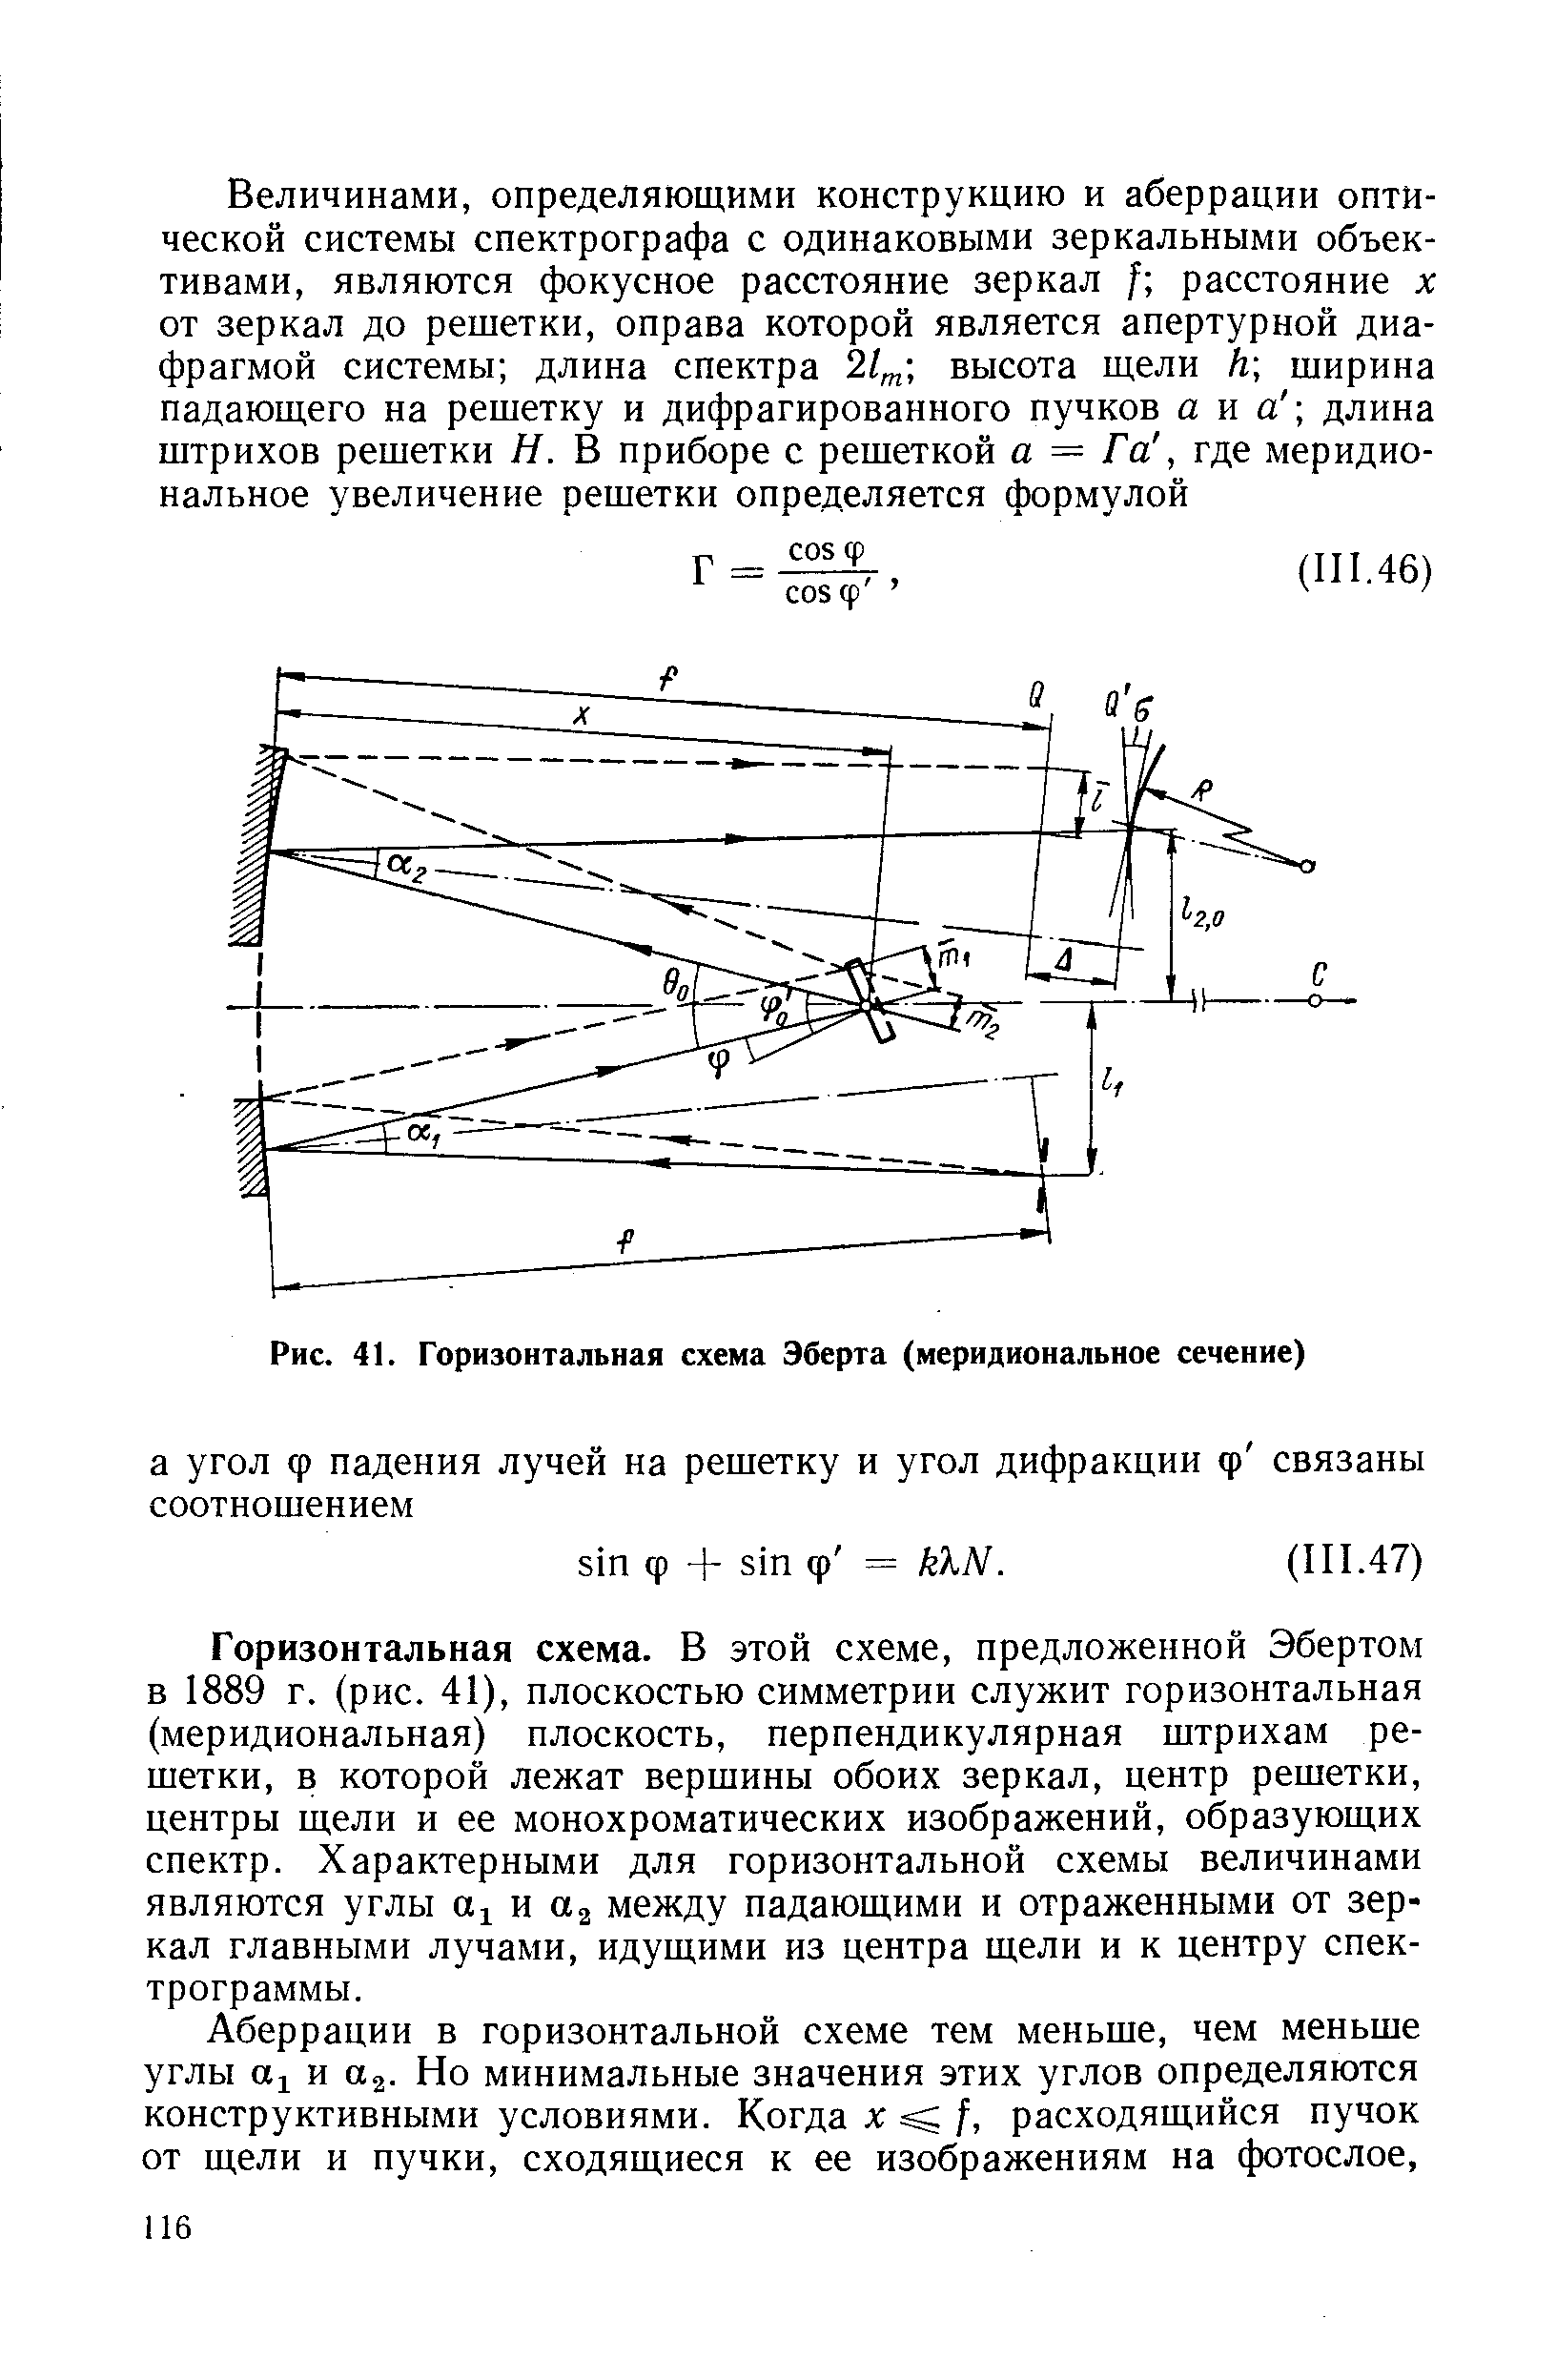 Горизонтальная схема. В этой схеме, предложенной Эбертом в 1889 г. (рис. 41), плоскостью симметрии служит горизонтальная (меридиональная) плоскость, перпендикулярная штрихам решетки, в которой лежат вершины обоих зеркал, центр решетки, центры щели и ее монохроматических изображений, образующих спектр. Характерными для горизонтальной схемы величинами являются углы и между падающими и отраженными от зеркал главными лучами, идущими из центра щели и к центру спектрограммы.